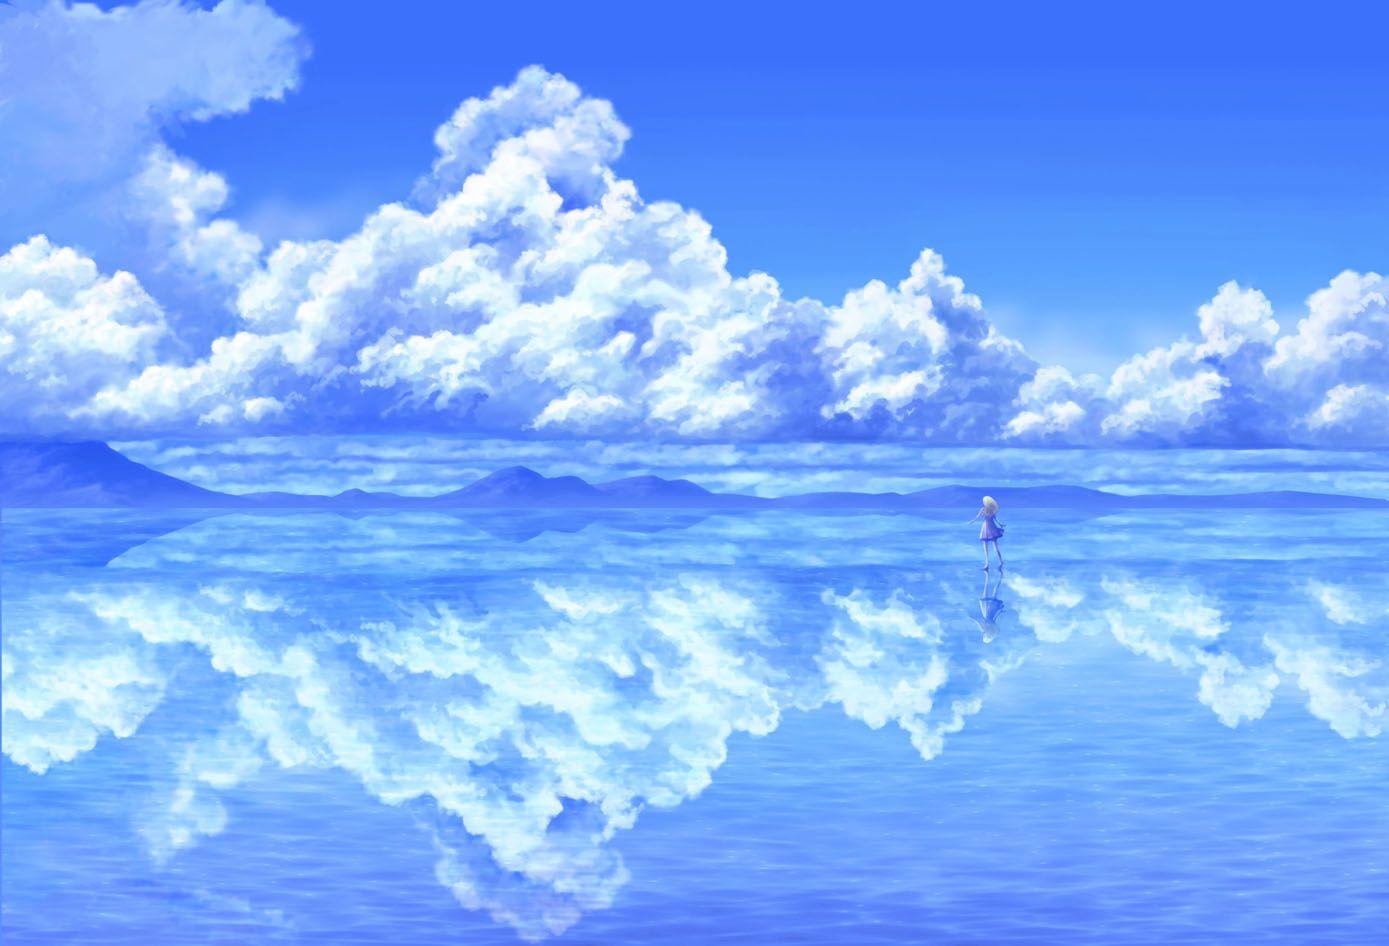 Hình nền anime với chủ đề đại dương sẽ đem lại cho bạn sự năng động và tươi mới trong không gian làm việc hay giải trí của mình. Hãy chiêm ngưỡng viễn cảnh biển cả đắm trong ánh hoàng hôn lãng mạn, những chú tôm mực xinh đẹp bơi lội tự do giữa những bông tuyết màu xanh. Ai bảo cuộc sống đô thị không thể đẹp như mơ?